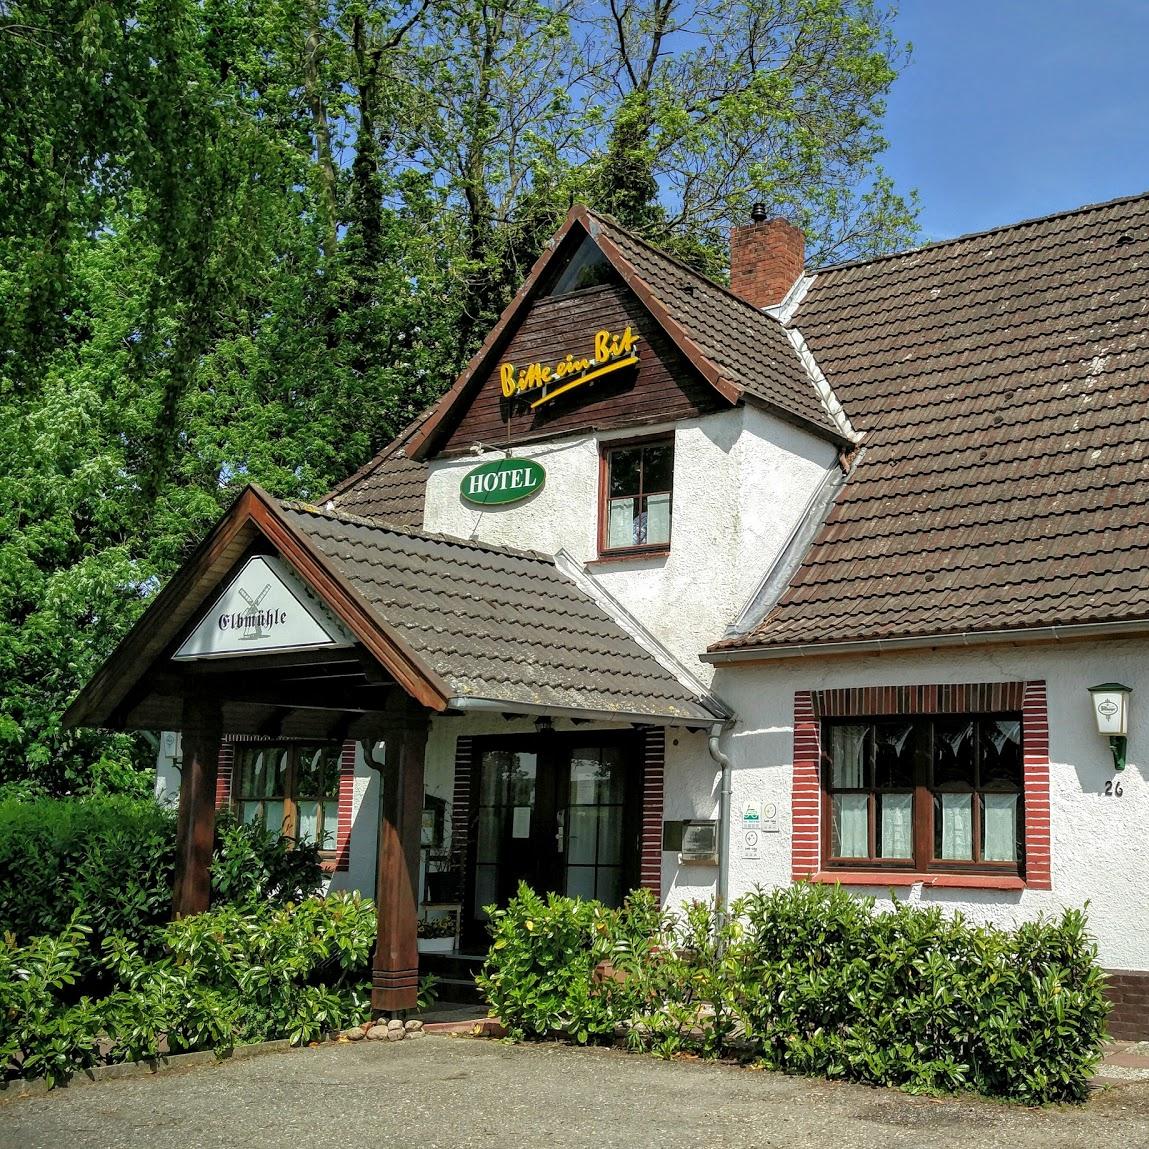 Restaurant "Hotel Elbmühle" in Sankt Margarethen